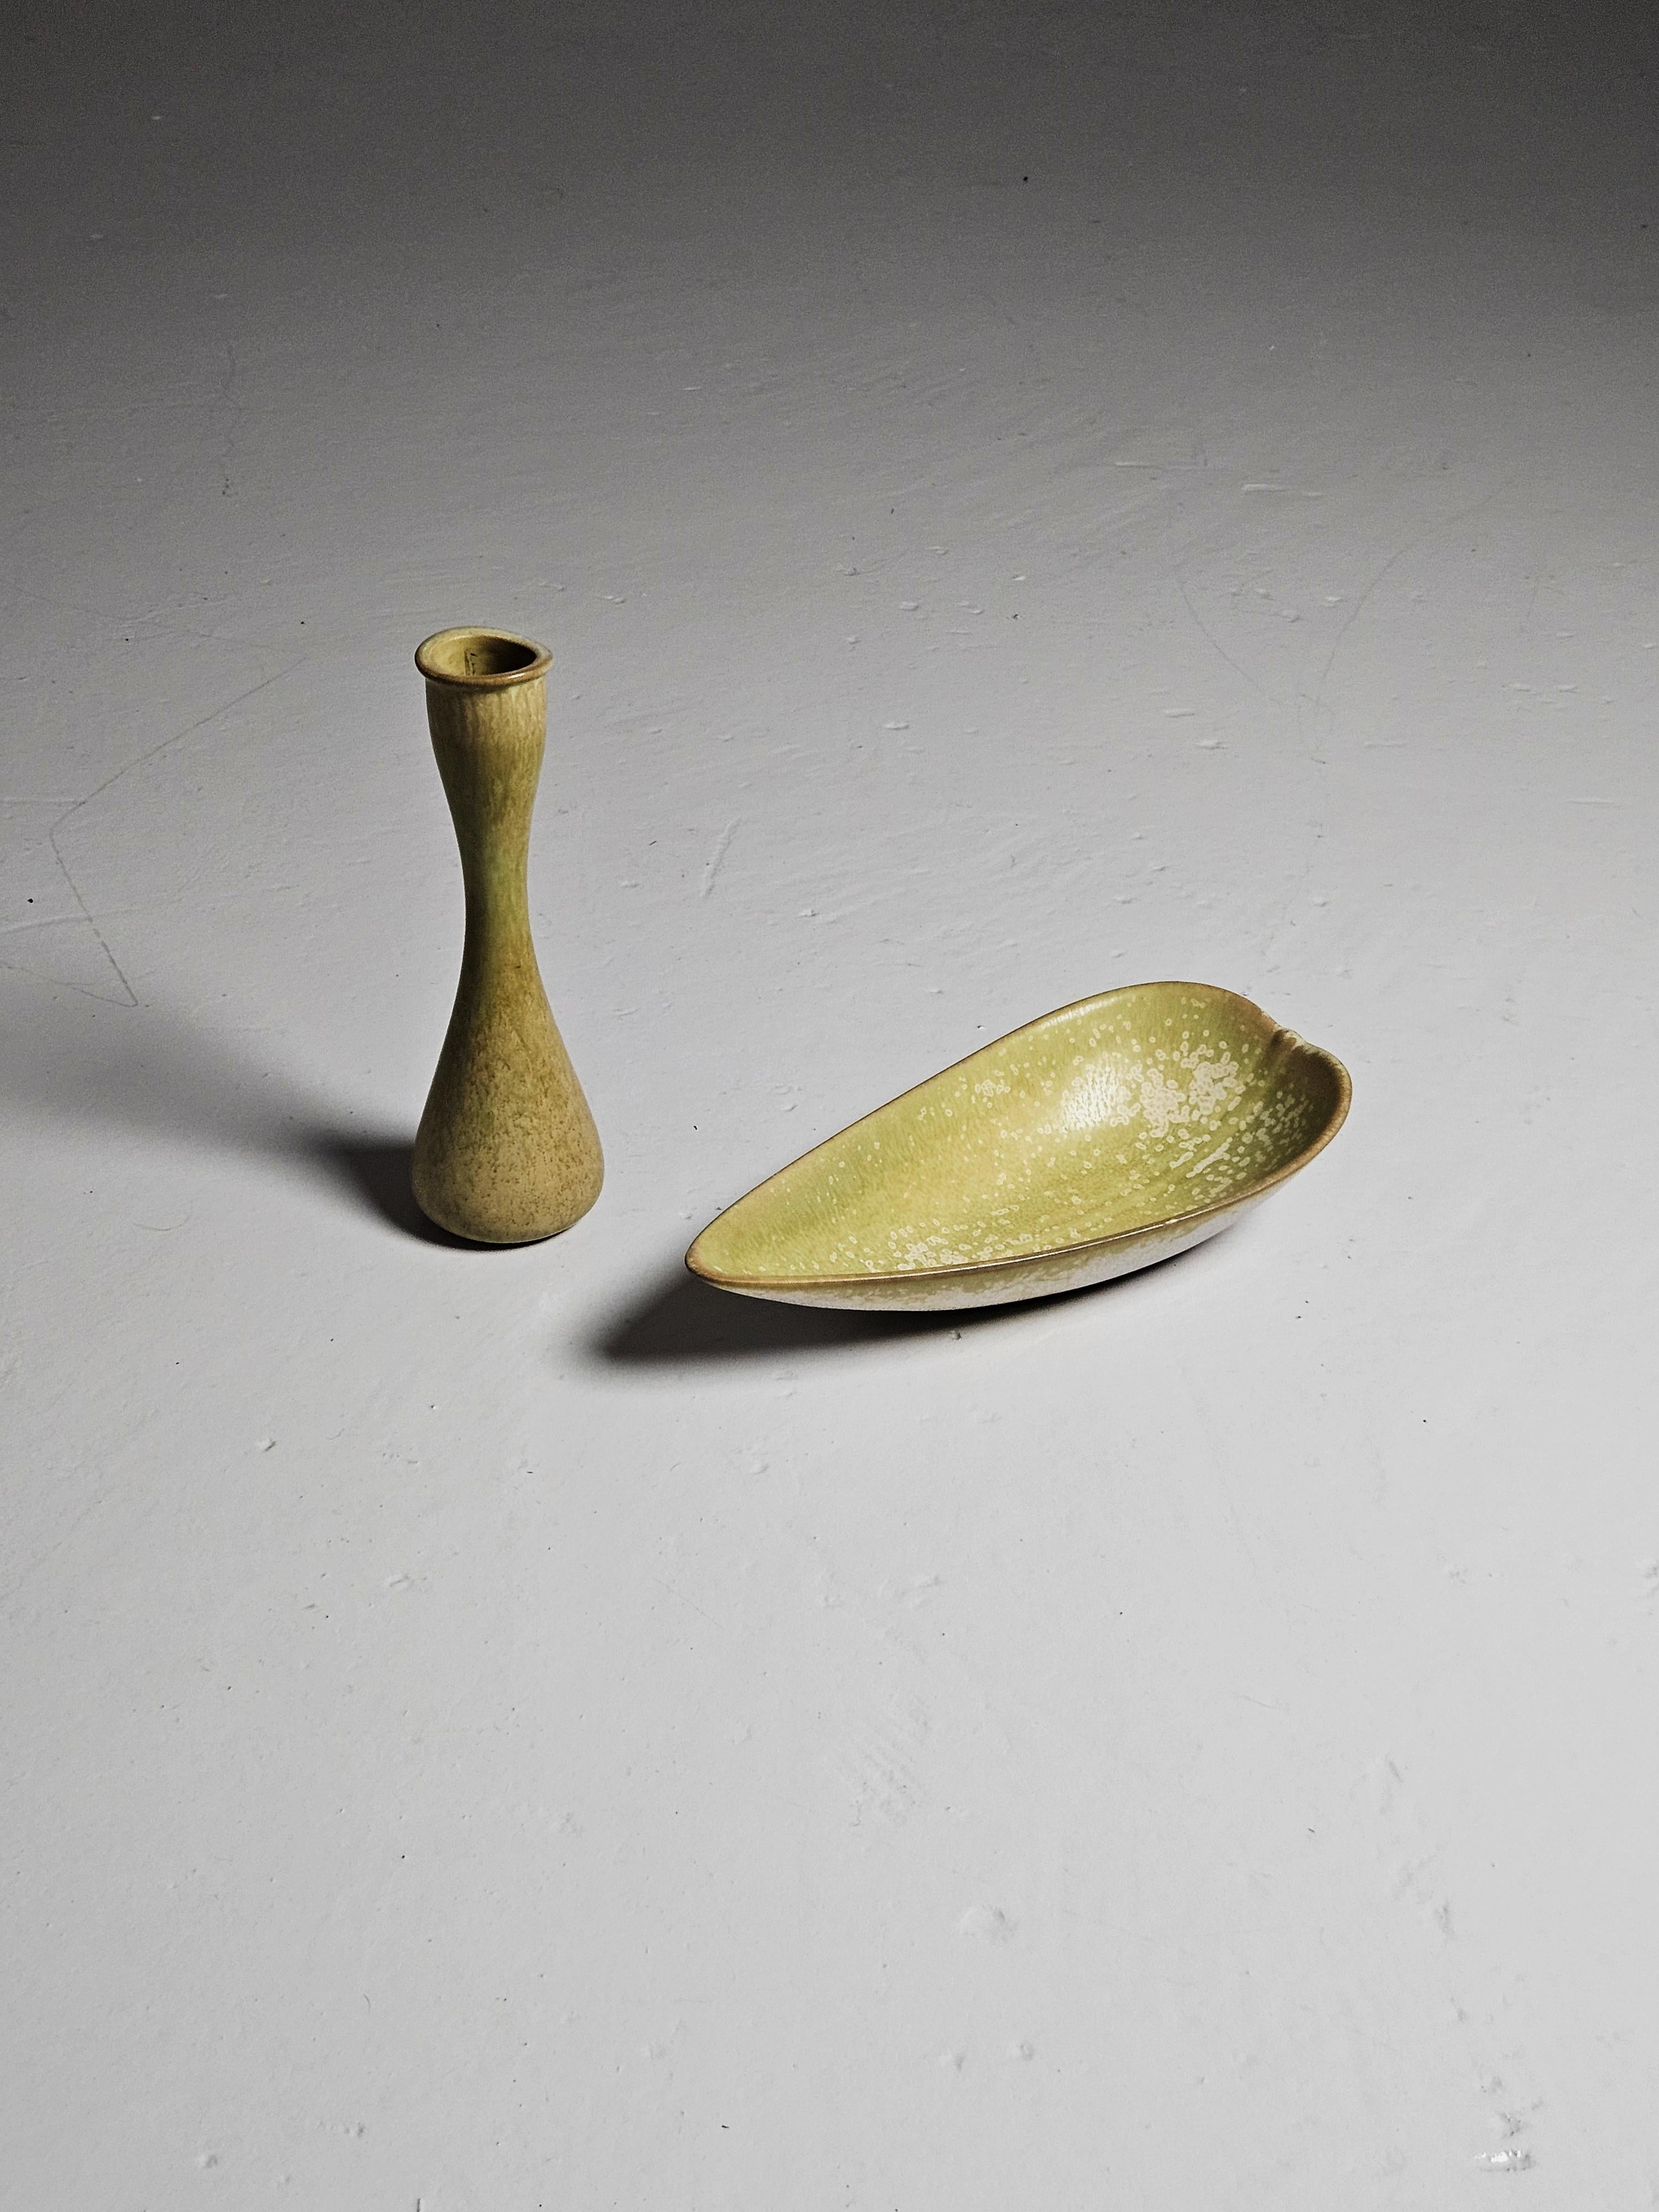 Magnifique ensemble de vase et de bol par Gunnar Nylund et produit par Rörstrand, Suède, au cours des années 1950. 

Tous deux sont recouverts d'une glaçure vert tendre. Bol avec des taches blanches. 

Dimensions du bol : Hauteur : 2.36 in (6